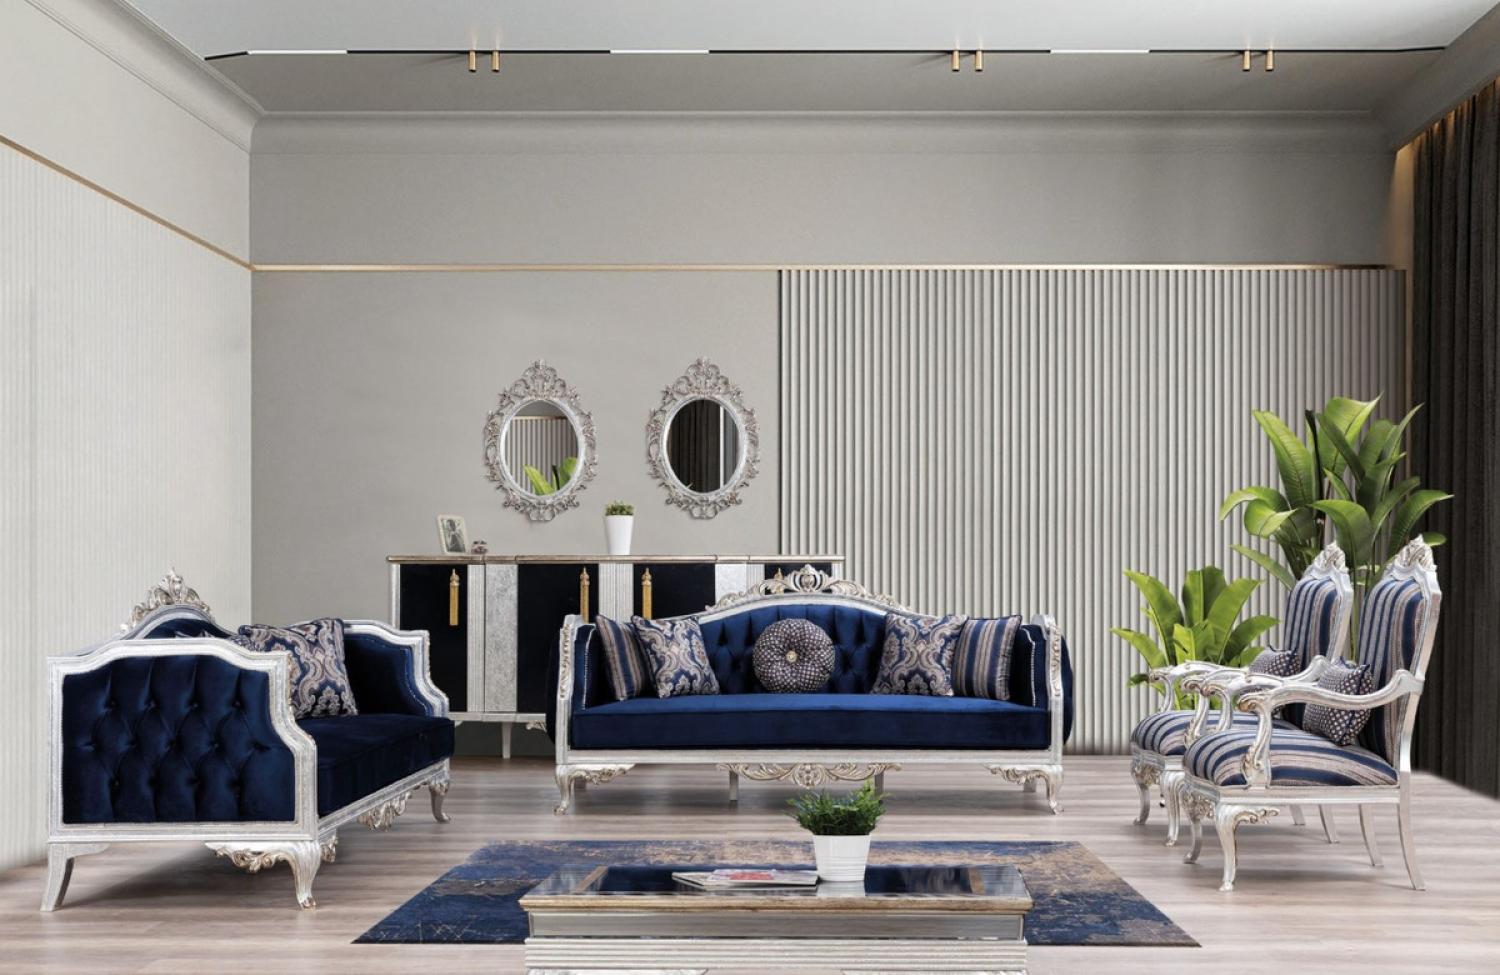 Casa Padrino Luxus Barock Wohnzimmer Set Blau / Silber / Gold - 2 Sofas & 2 Sessel & 1 Couchtisch - Wohnzimmer Möbel im Barockstil - Edel & Prunkvoll Bild 1